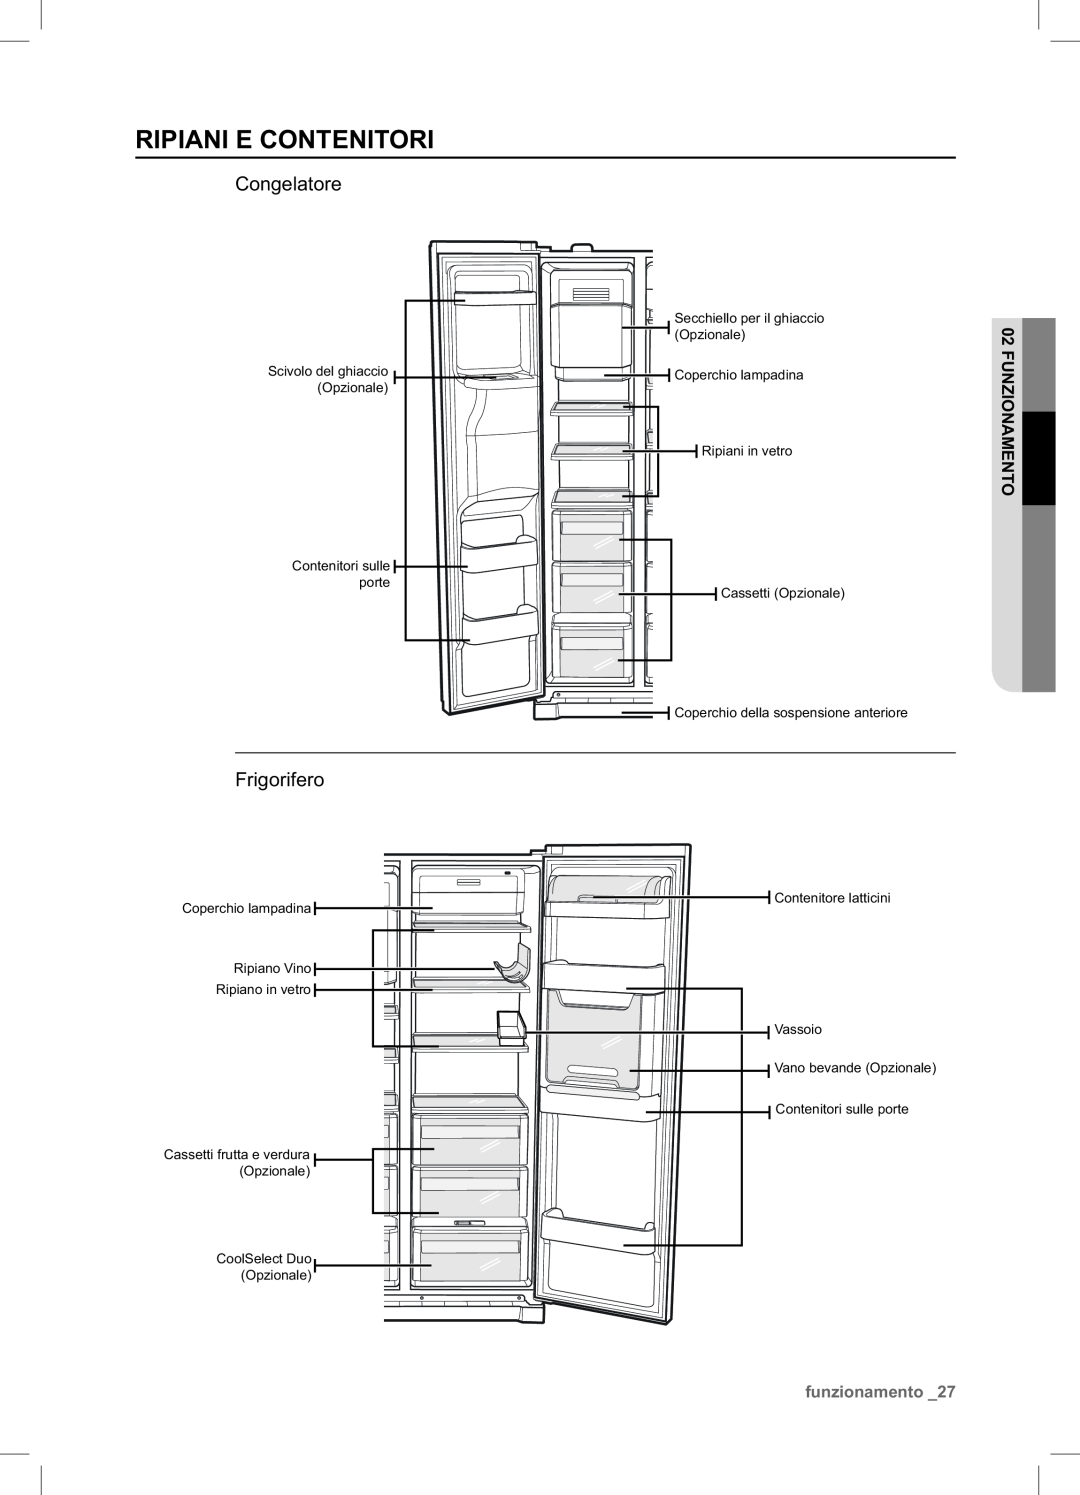 Samsung RSA1NTPE1/XES manual Ripiani E Contenitori, Congelatore, Frigorifero, funzionamento 